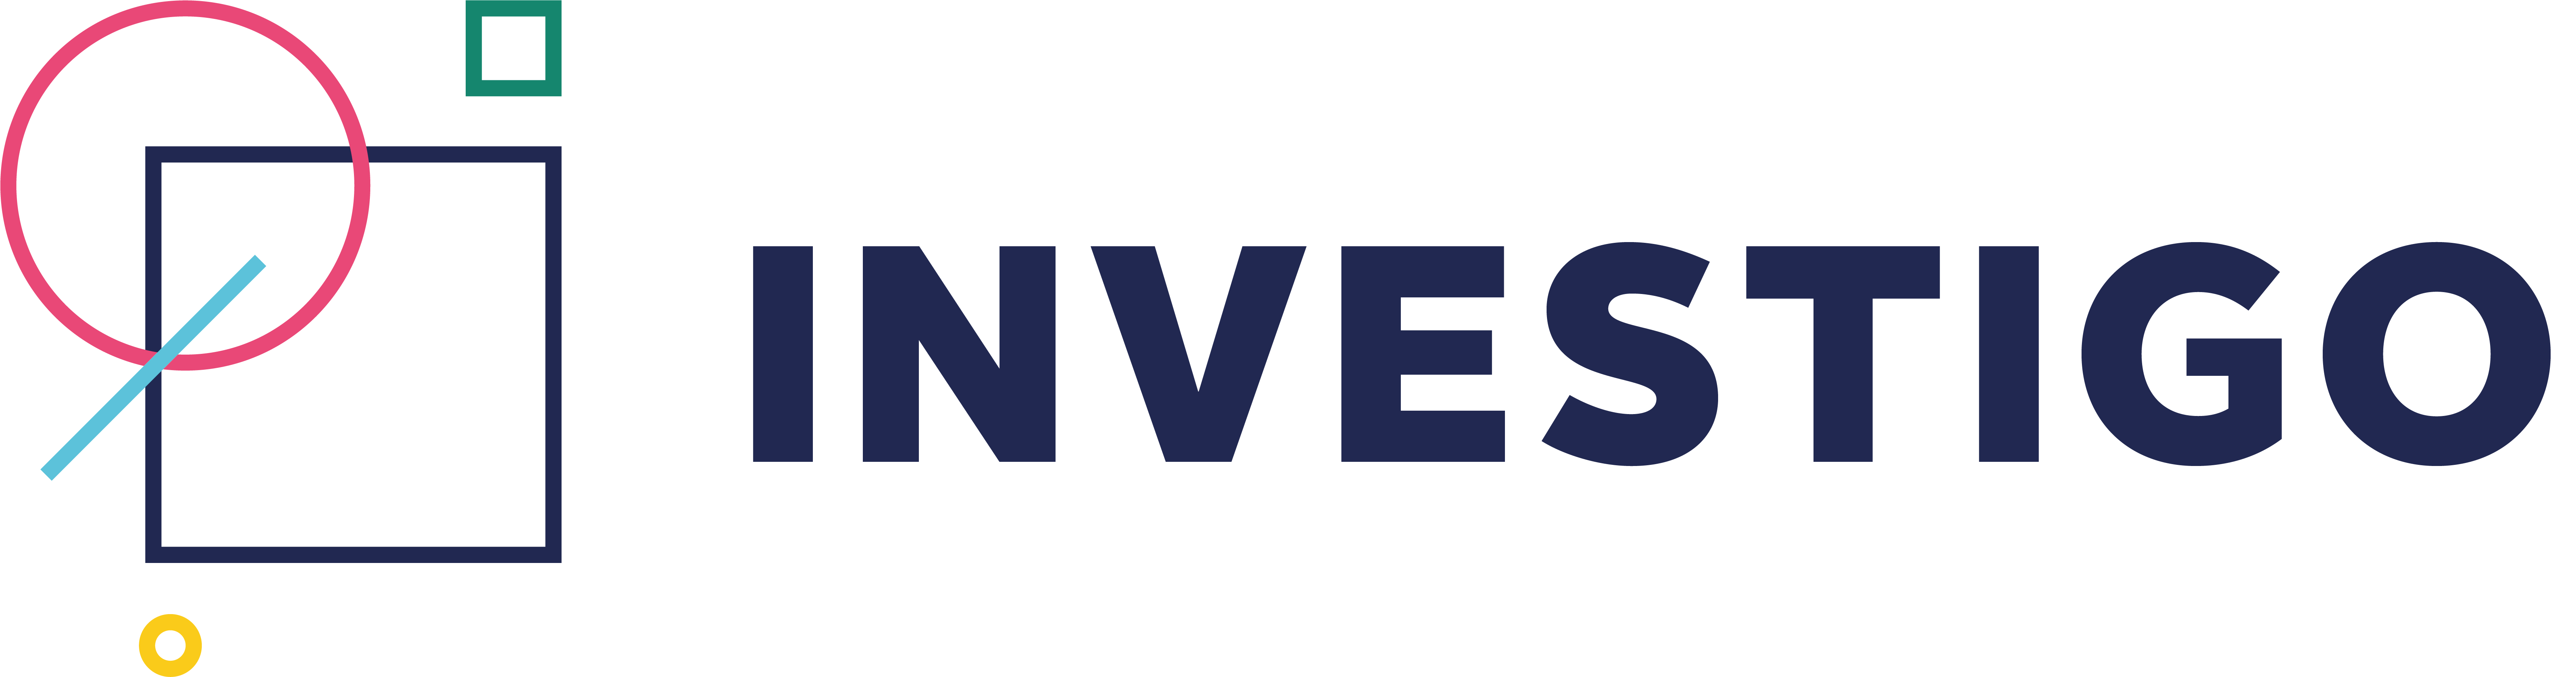 Investigo logo